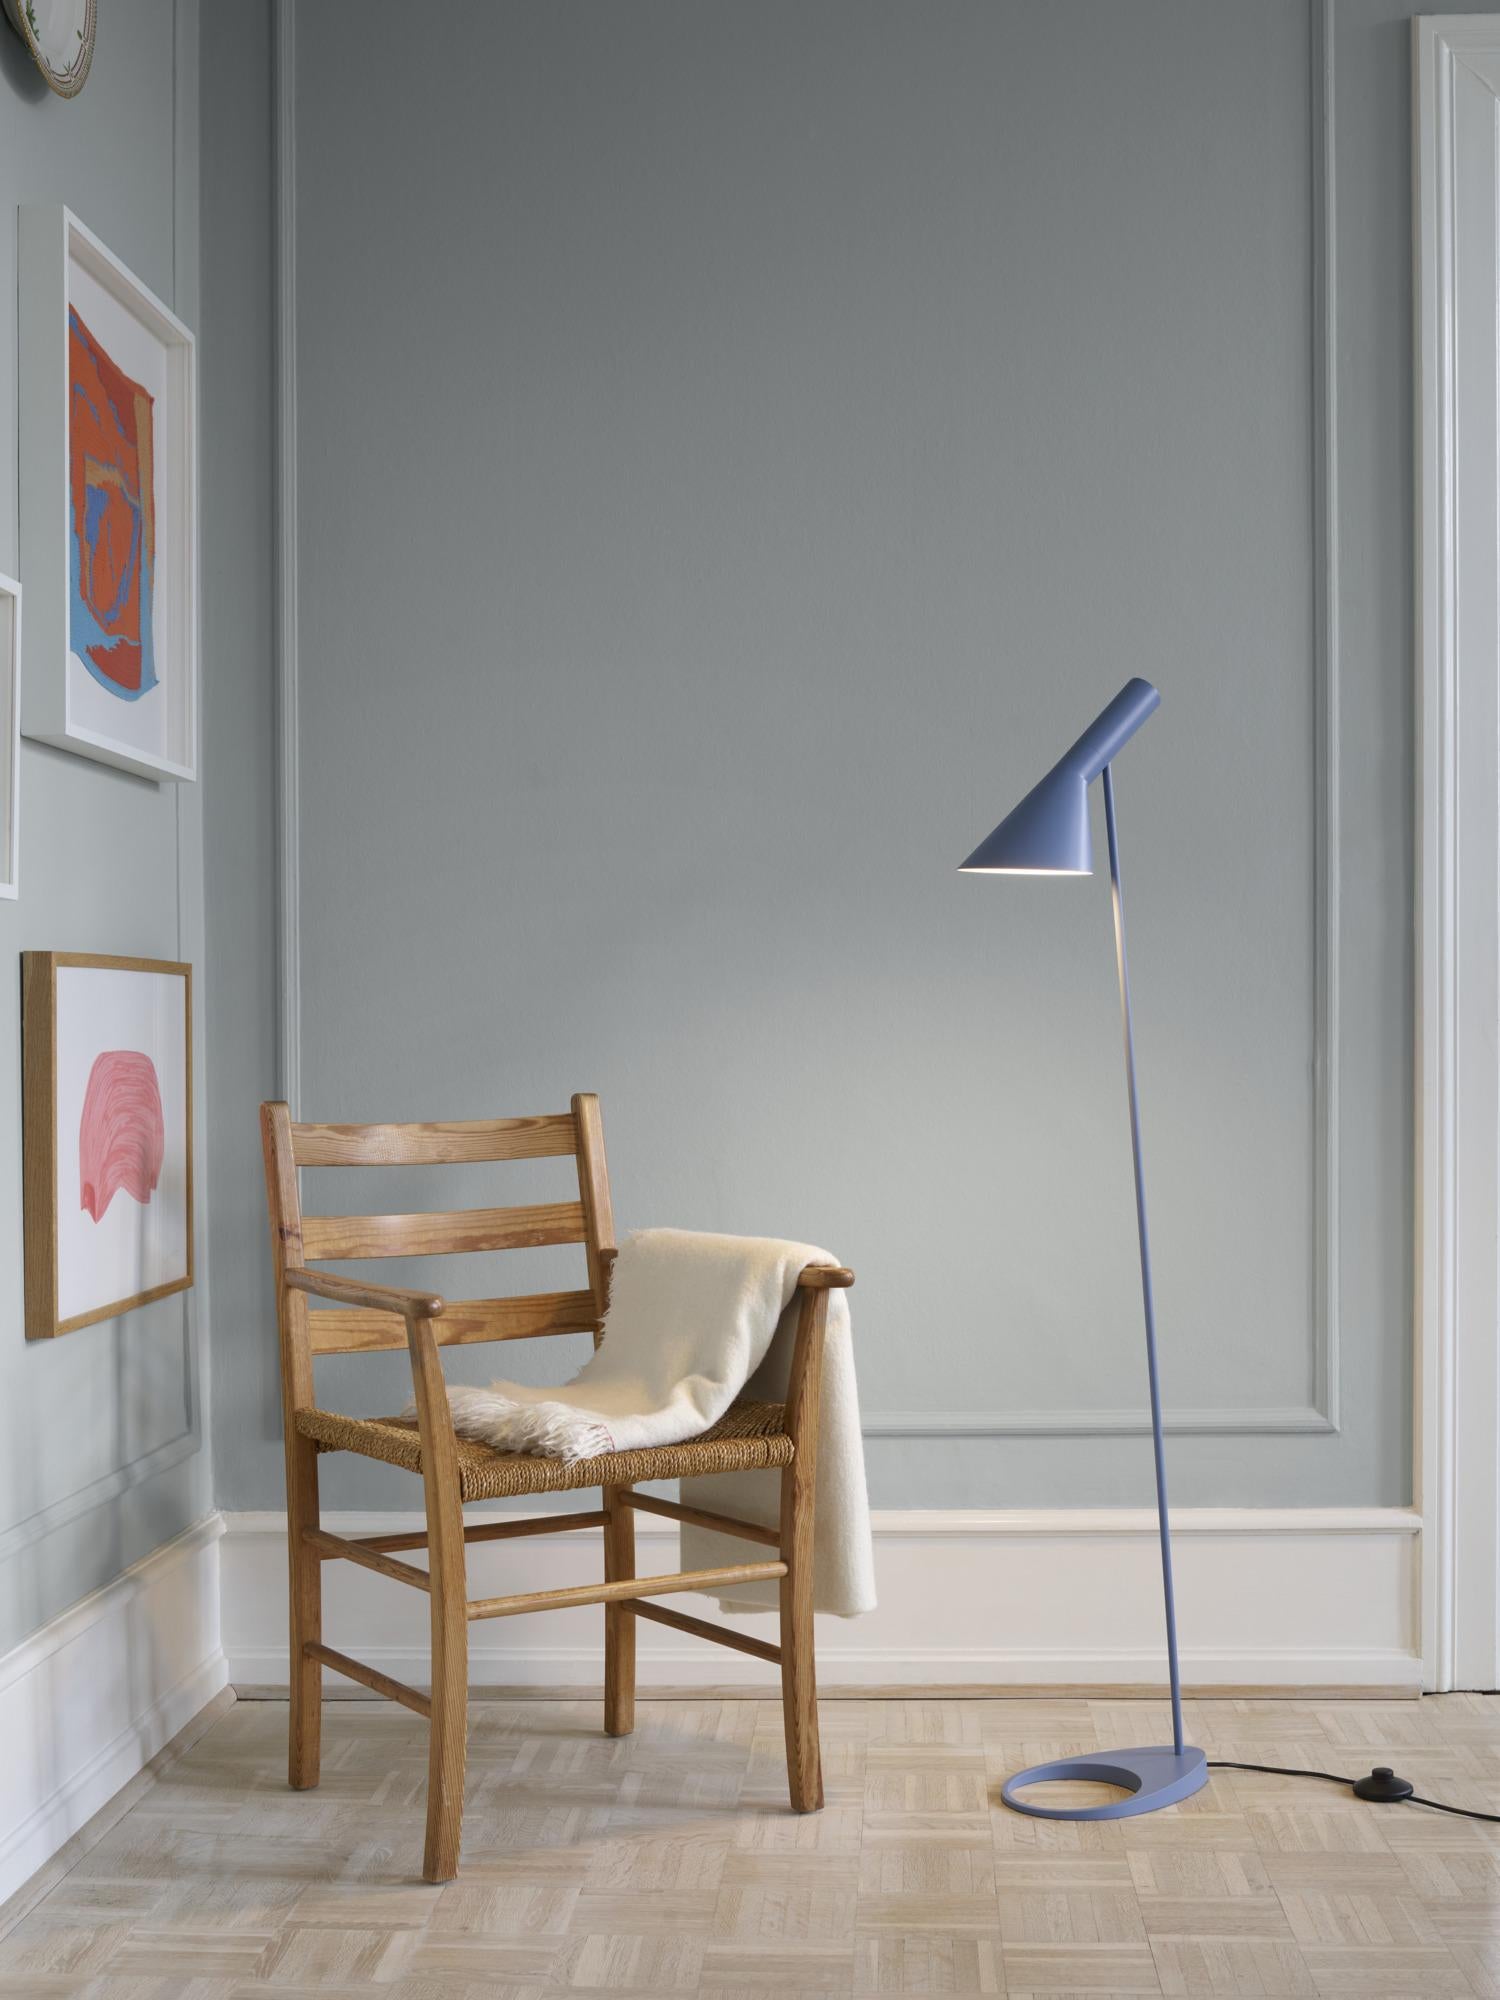 Lampadaire AJ d'Arne Jacobsen en bleu poussière pour Louis Poulsen.

La série AJ faisait partie de la collection de luminaires que le célèbre designer danois Arne Jacobsen a créée pour le premier hôtel SAS Royal en 1957. Aujourd'hui, ses designs de